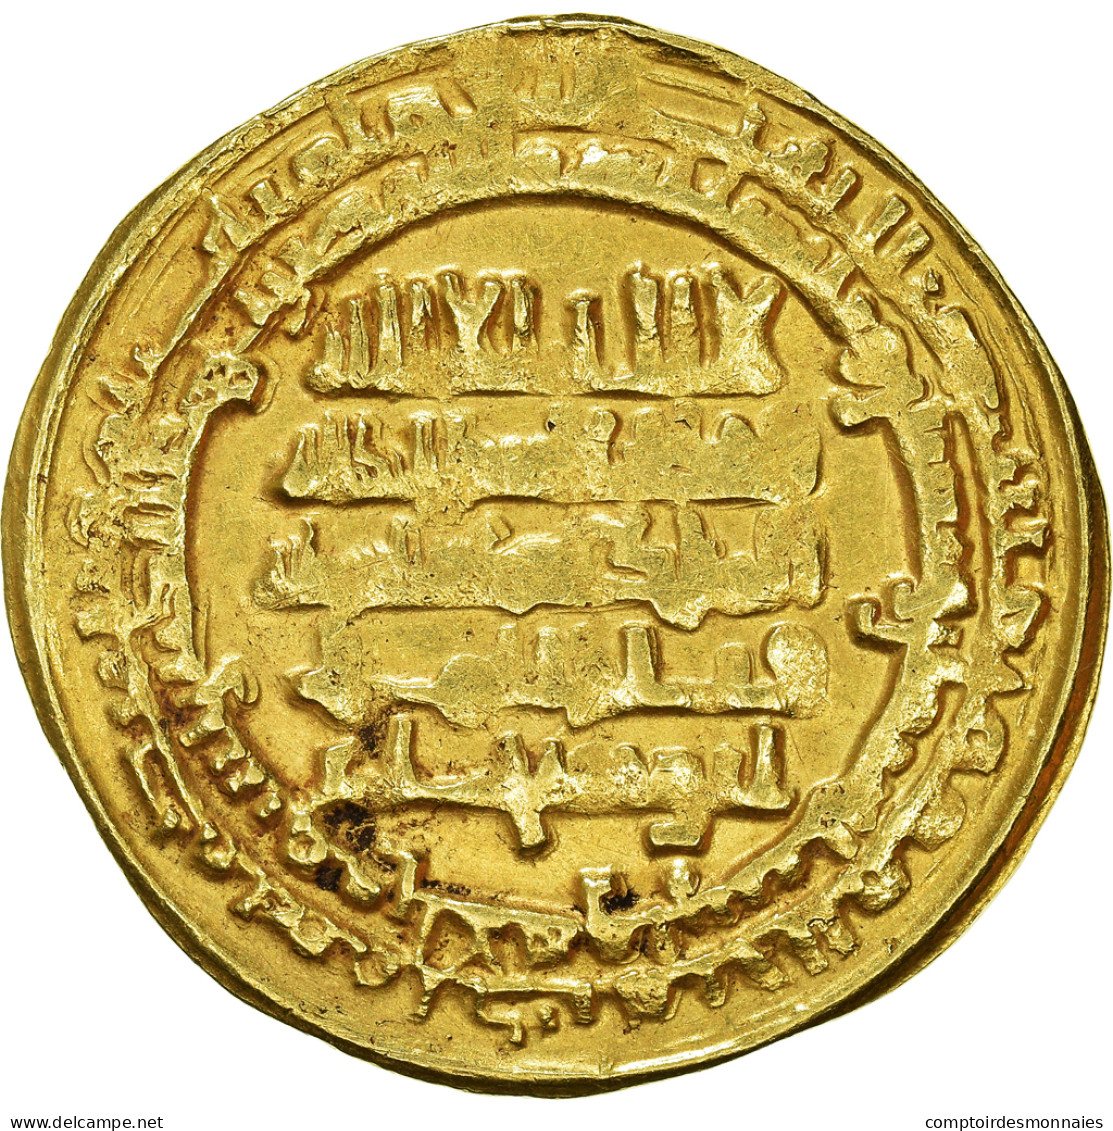 Monnaie, Buwayhid, 'Adud Al-Dawla, Dinar, AH 368 (978/979), Suq Al-Ahwaz, TB, Or - Islamic